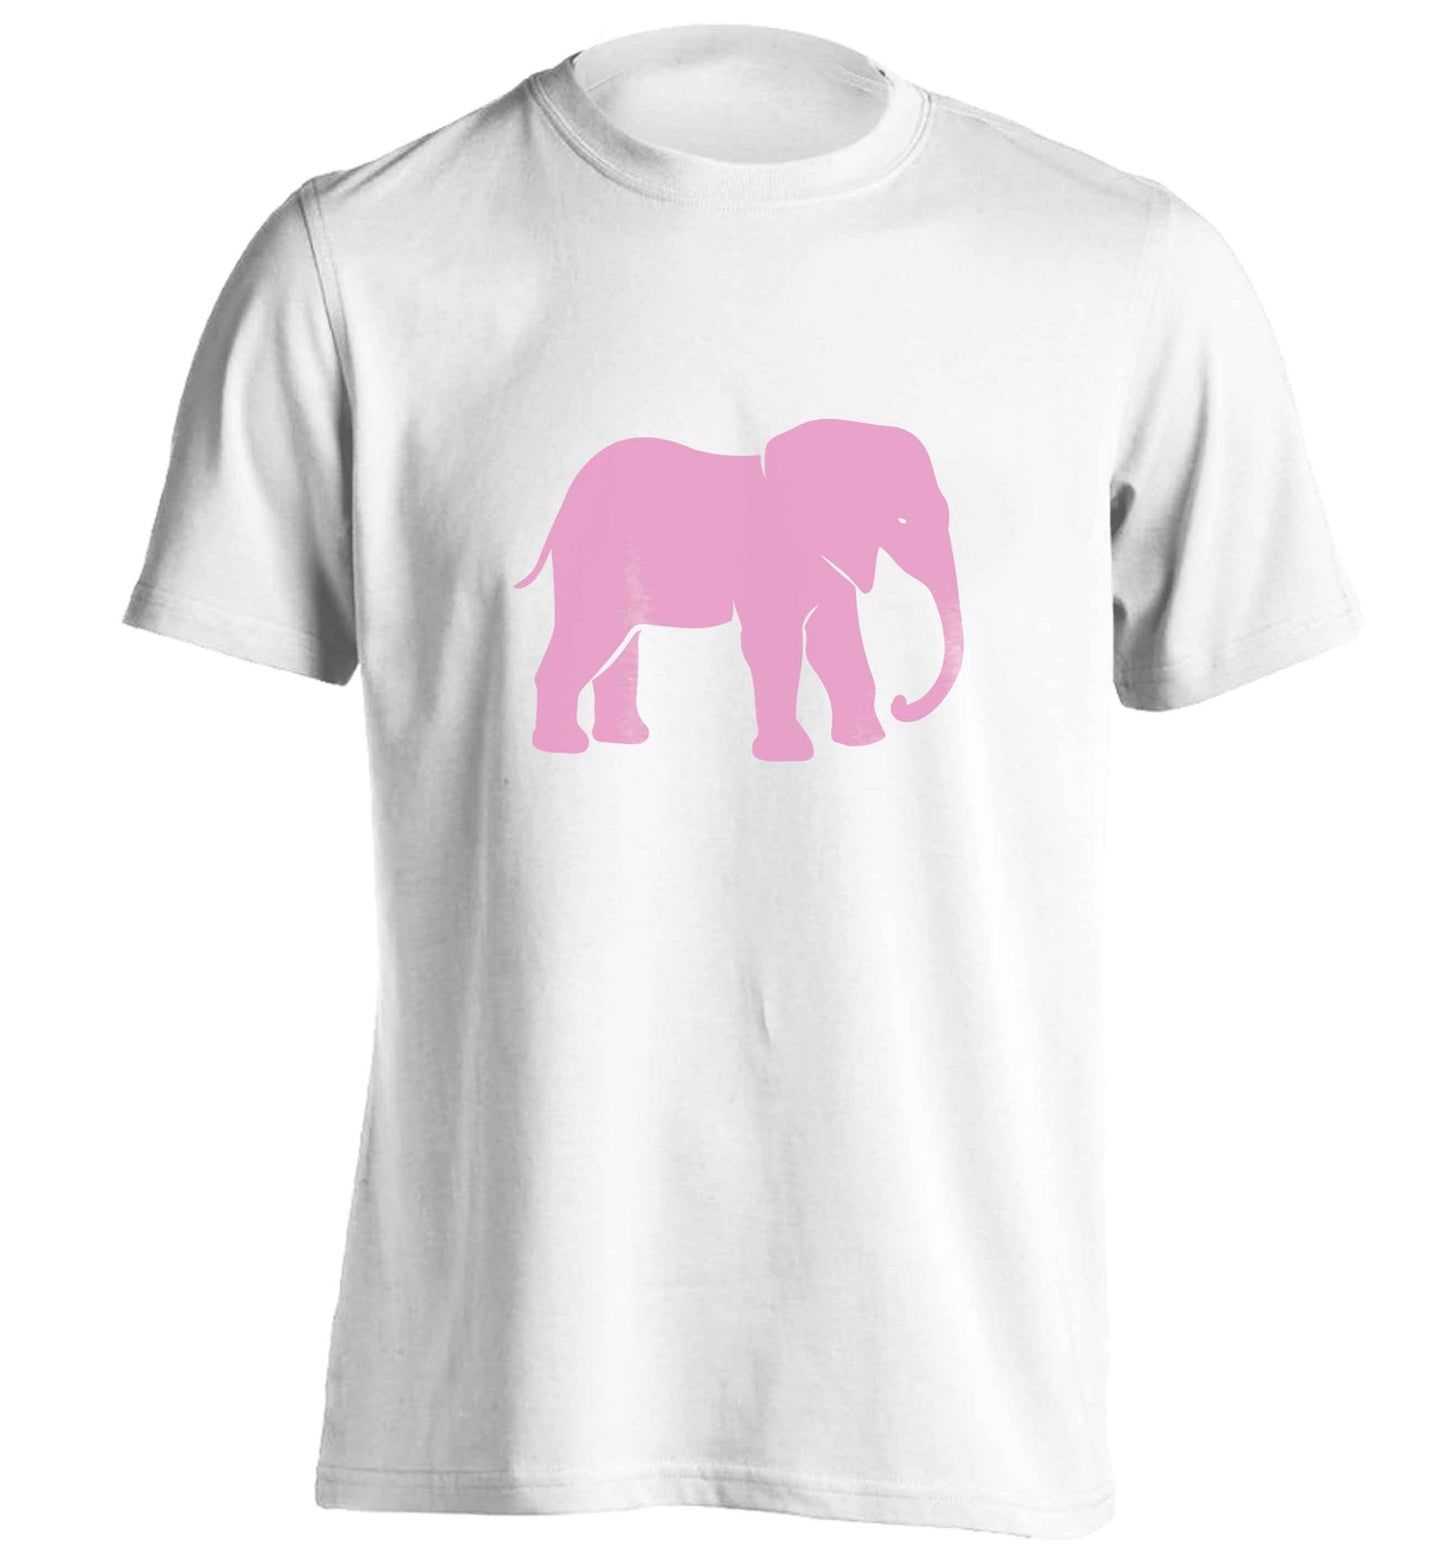 Pink elephant adults unisex white Tshirt 2XL